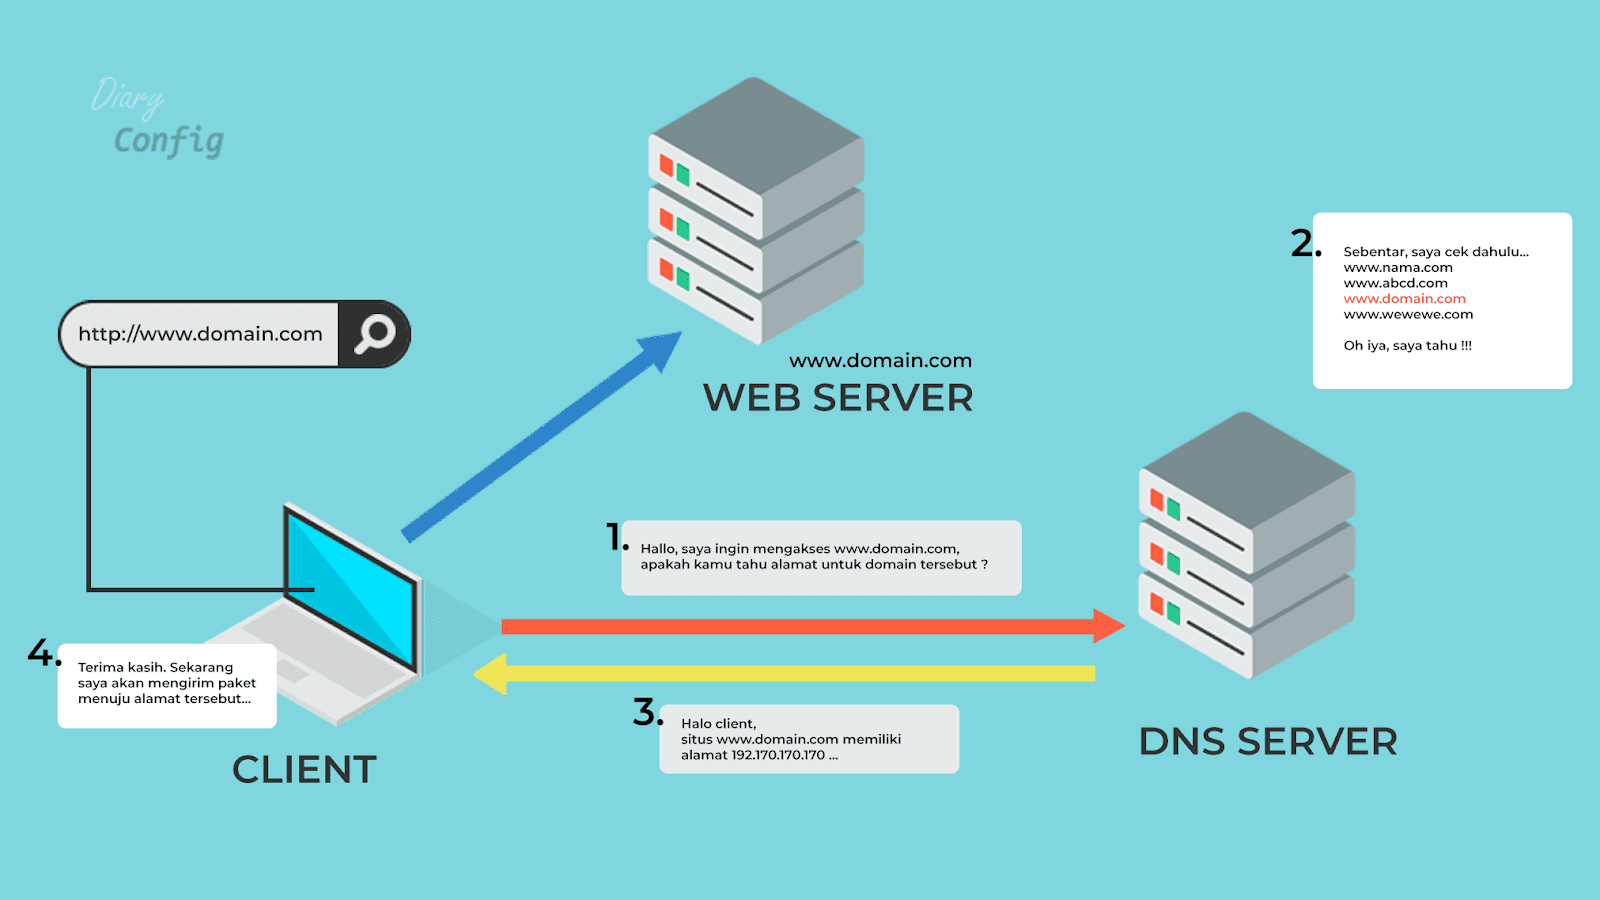 Использовать dns сервер с шифрованием dnscrypt яндекс браузер что это